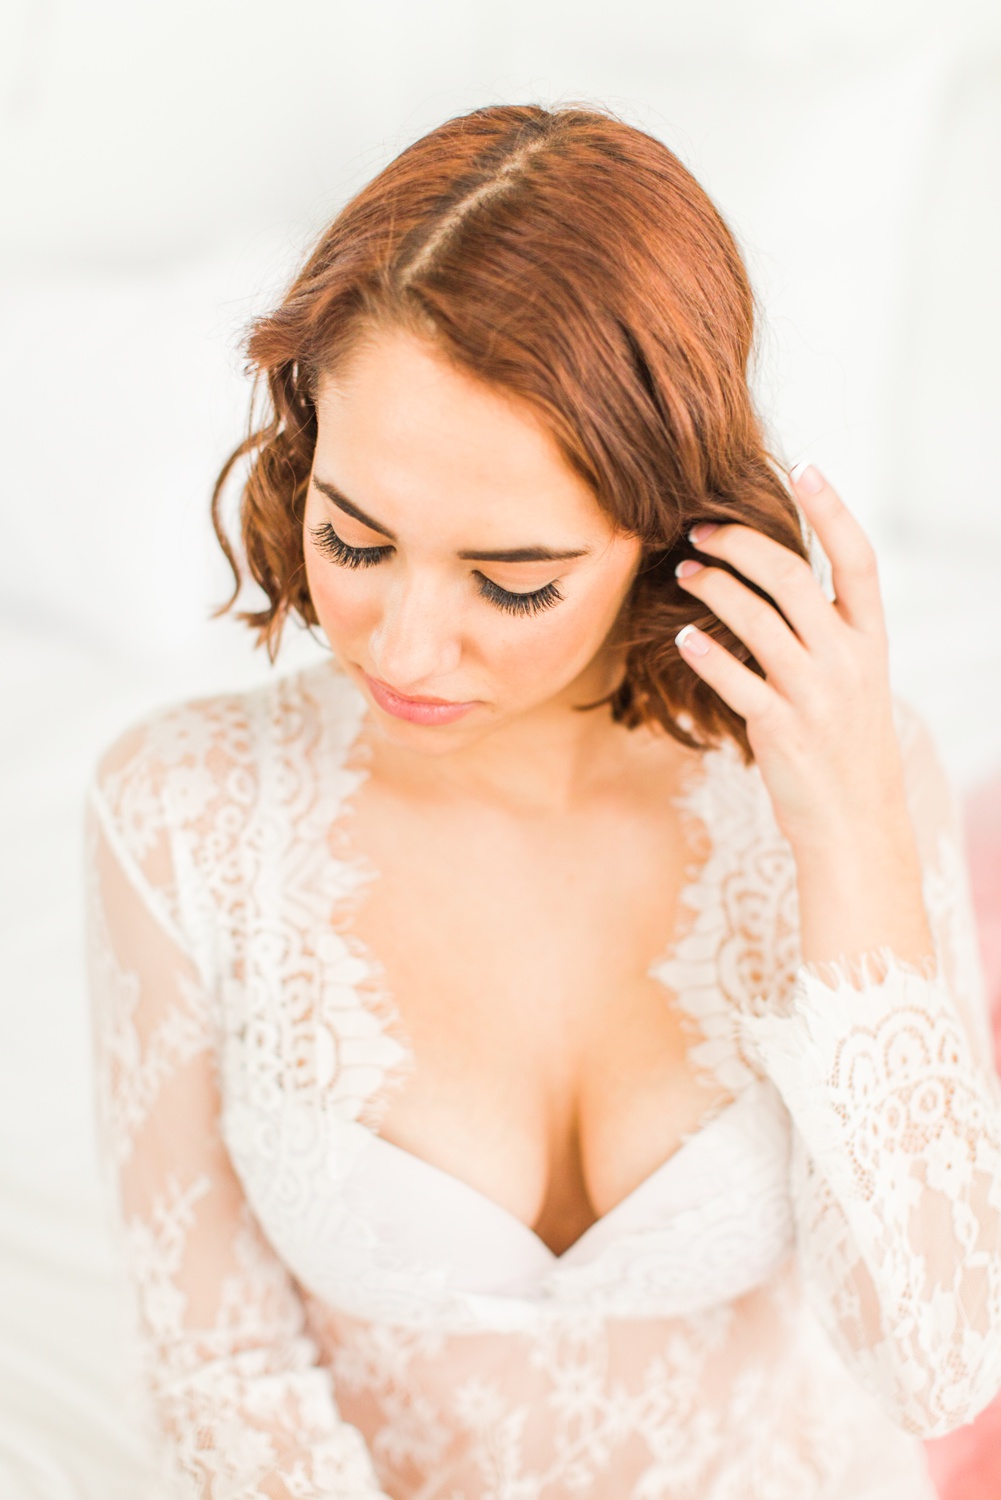 connecticut-bridal-boudoir-studio-westchester-nyc-wedding-engagement-photographer-suzanna-shaina-lee-photography-photo